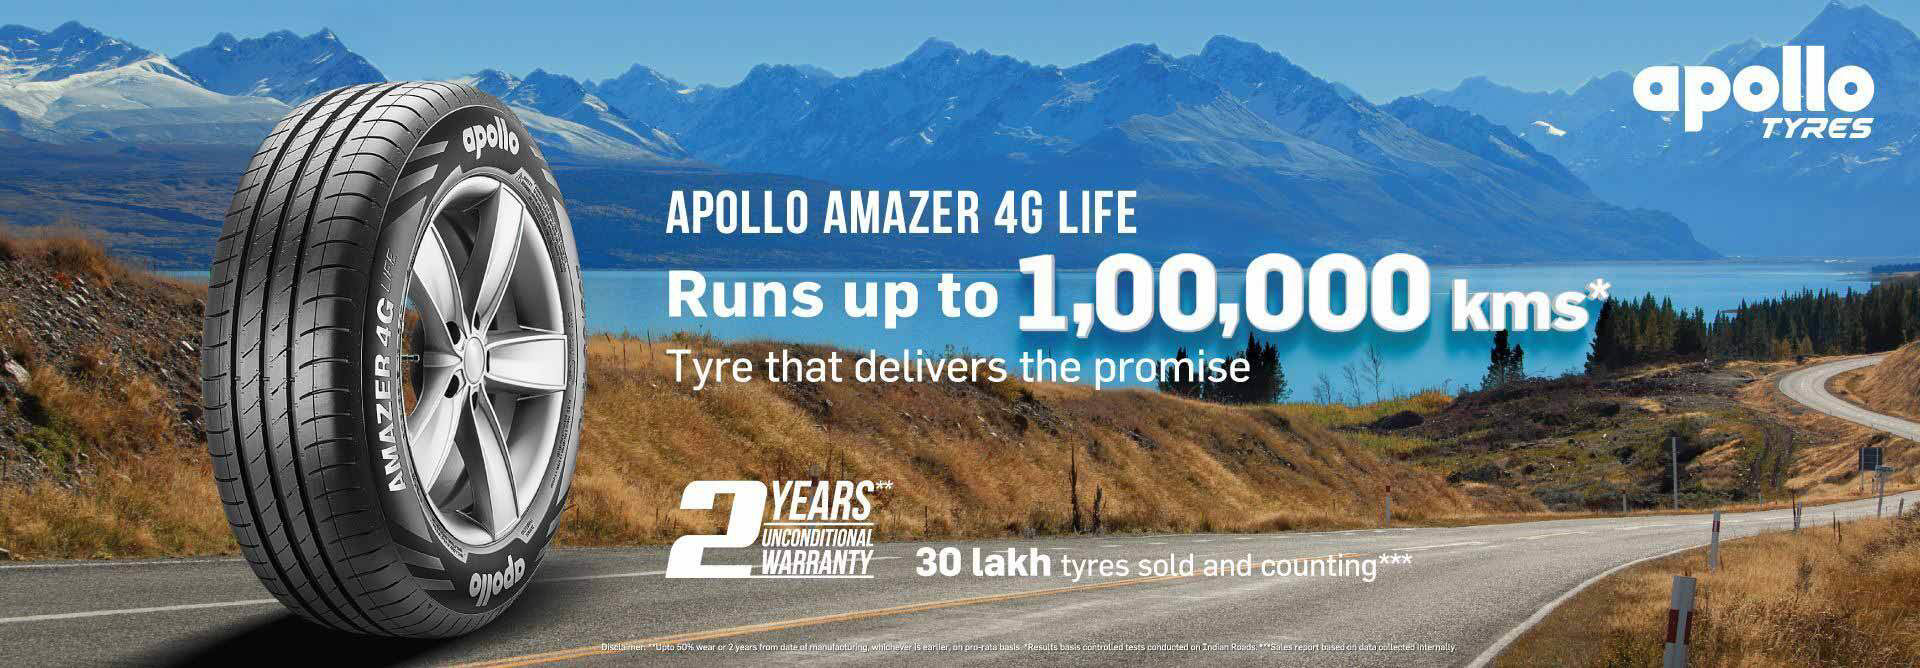 Apollo Amazer 4g life